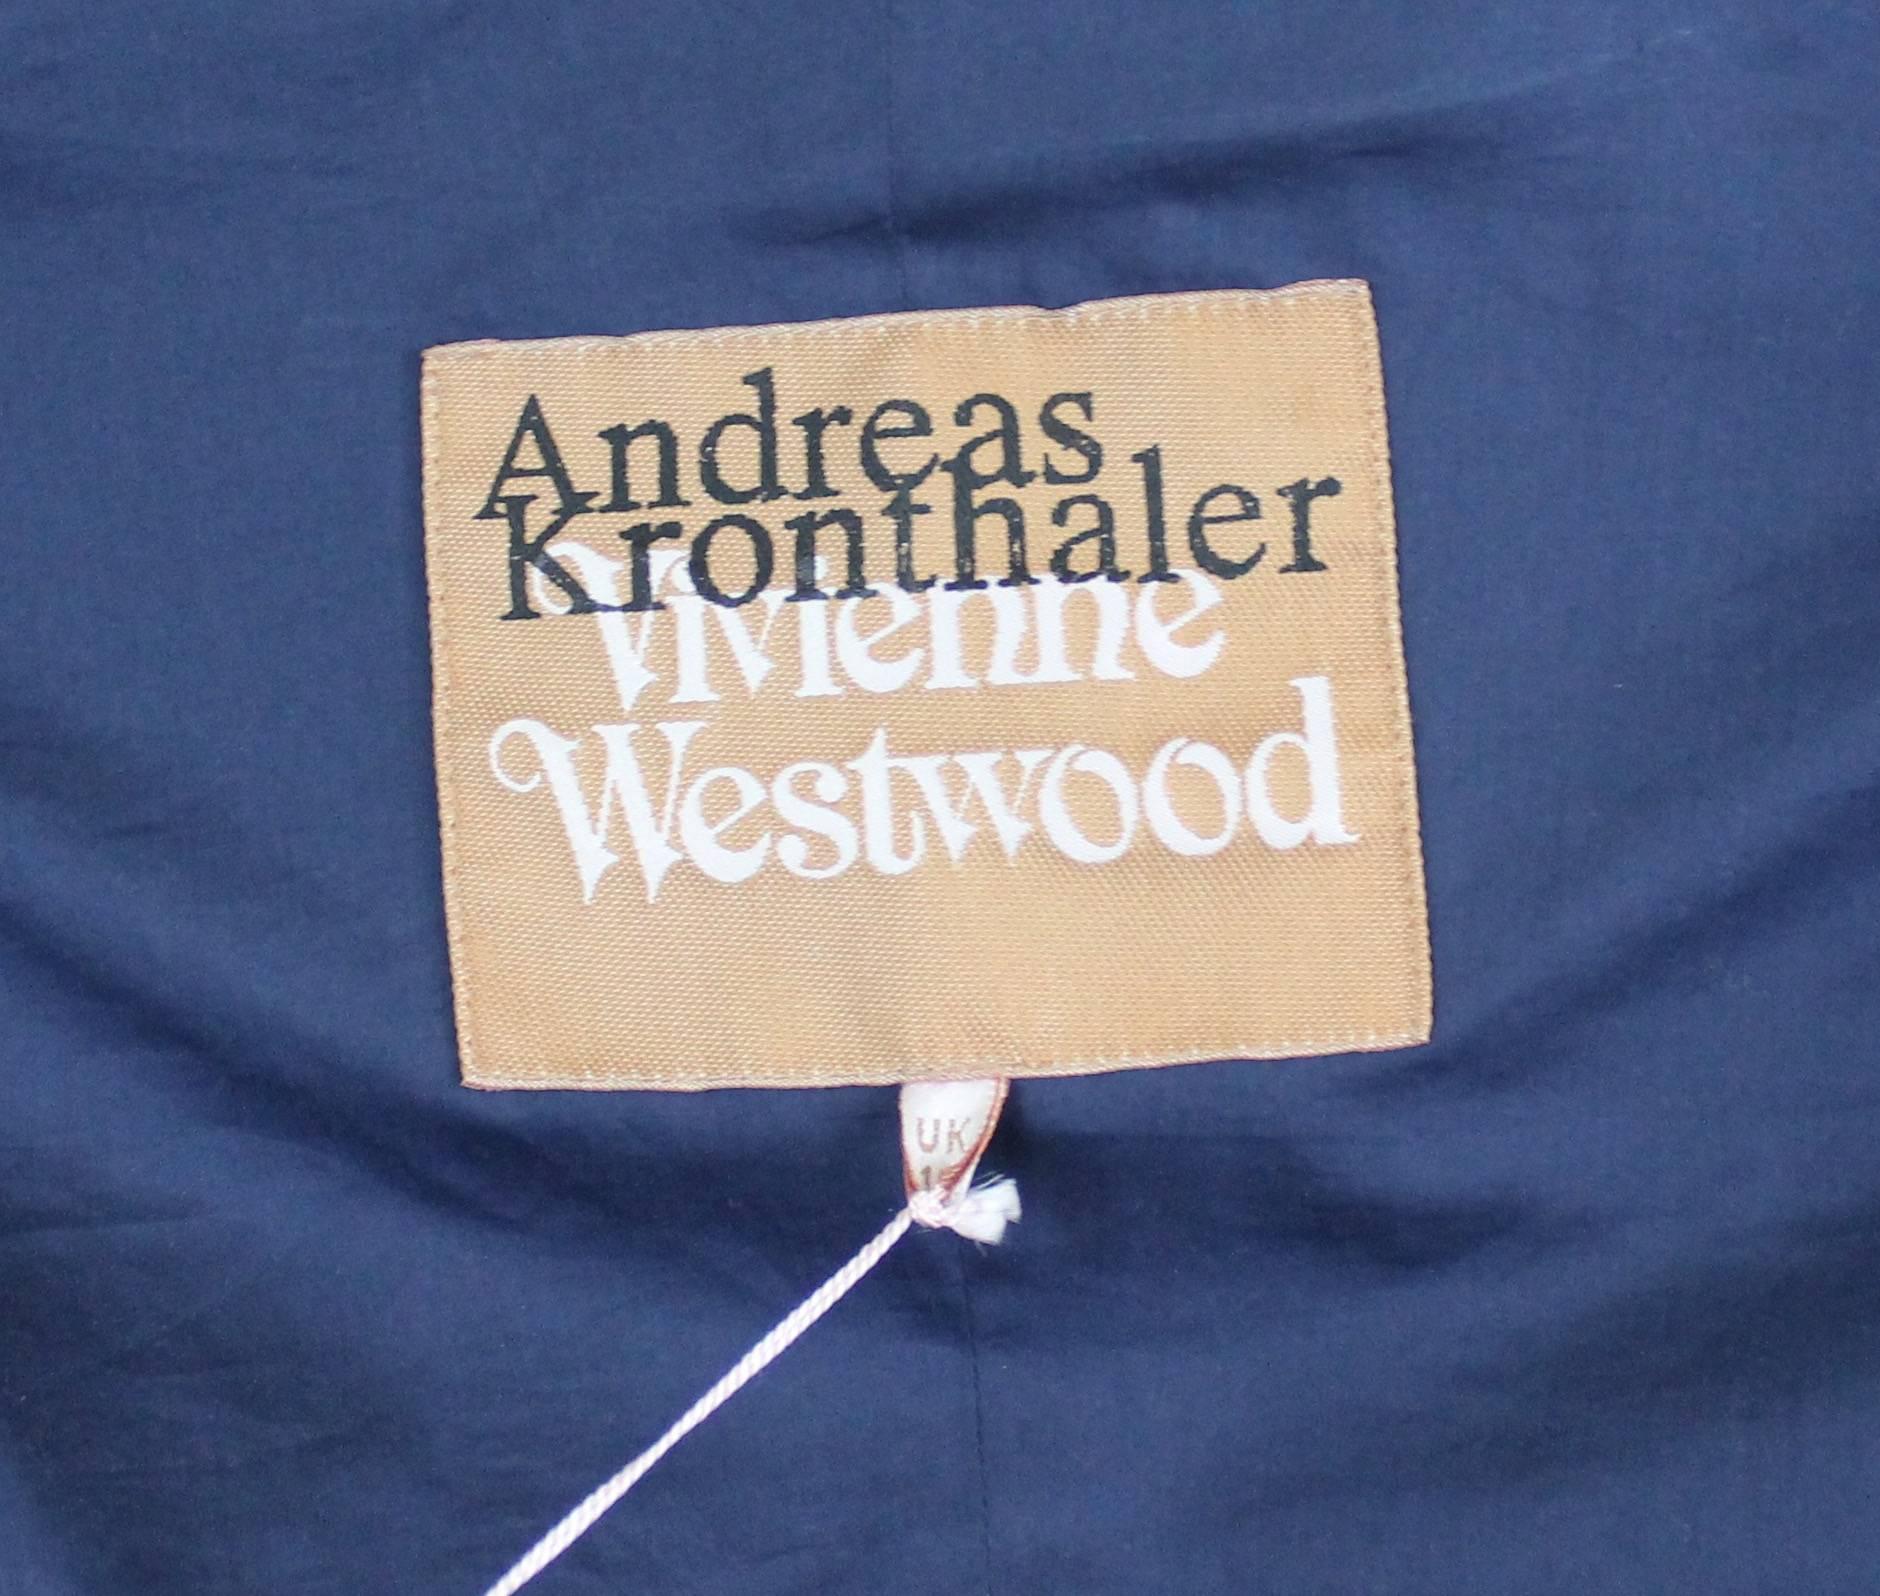 Andreas Kronthaler for Vivienne Westwood 